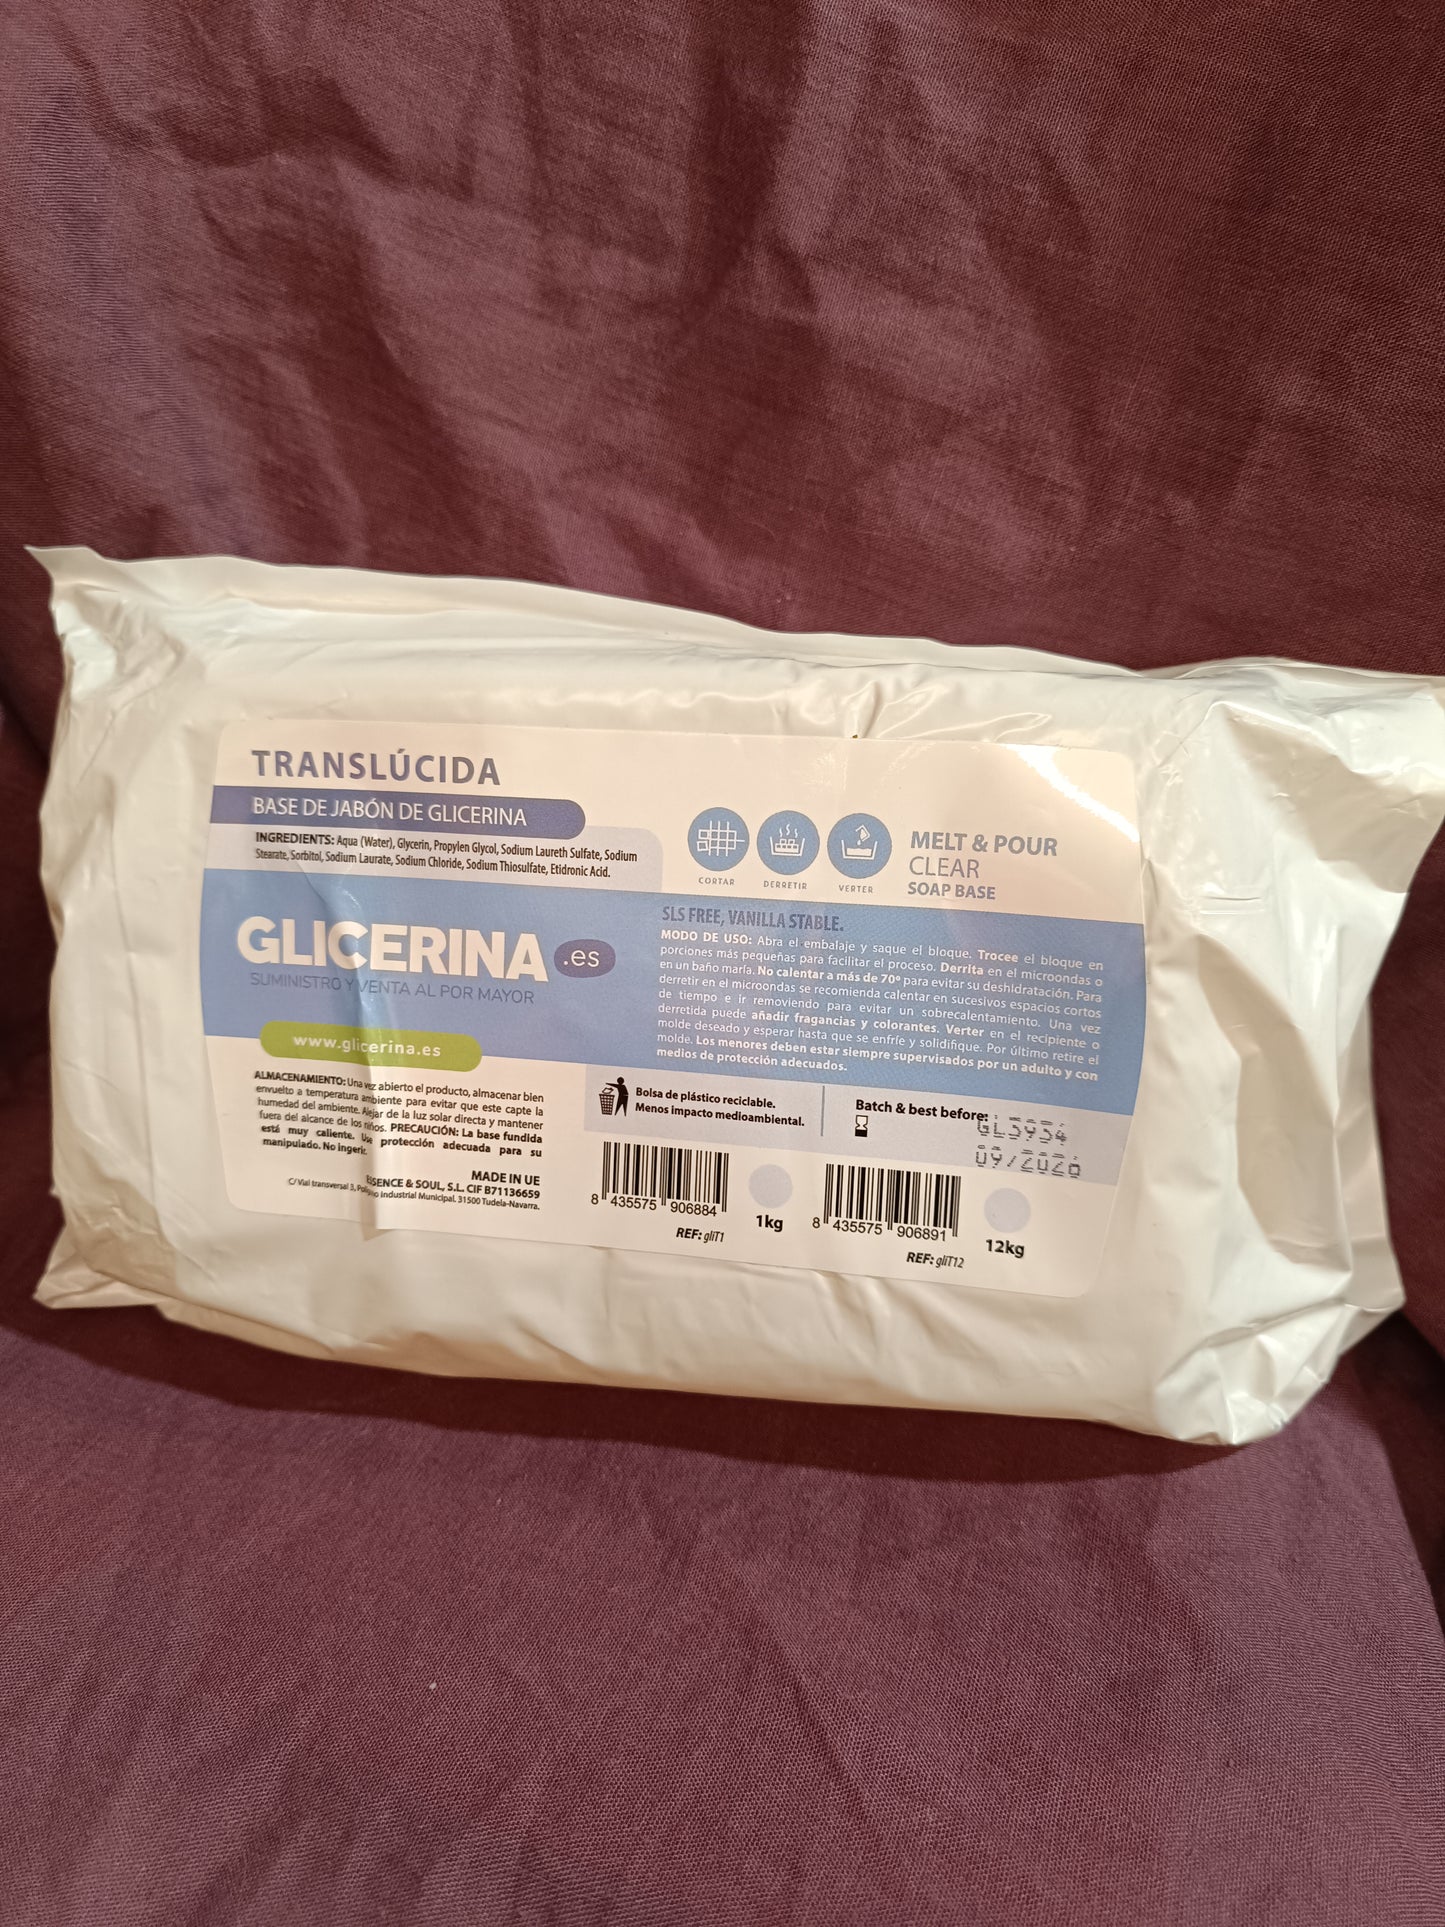 Glicerina solida rústica (Base para jabones) 1kg. aprox.